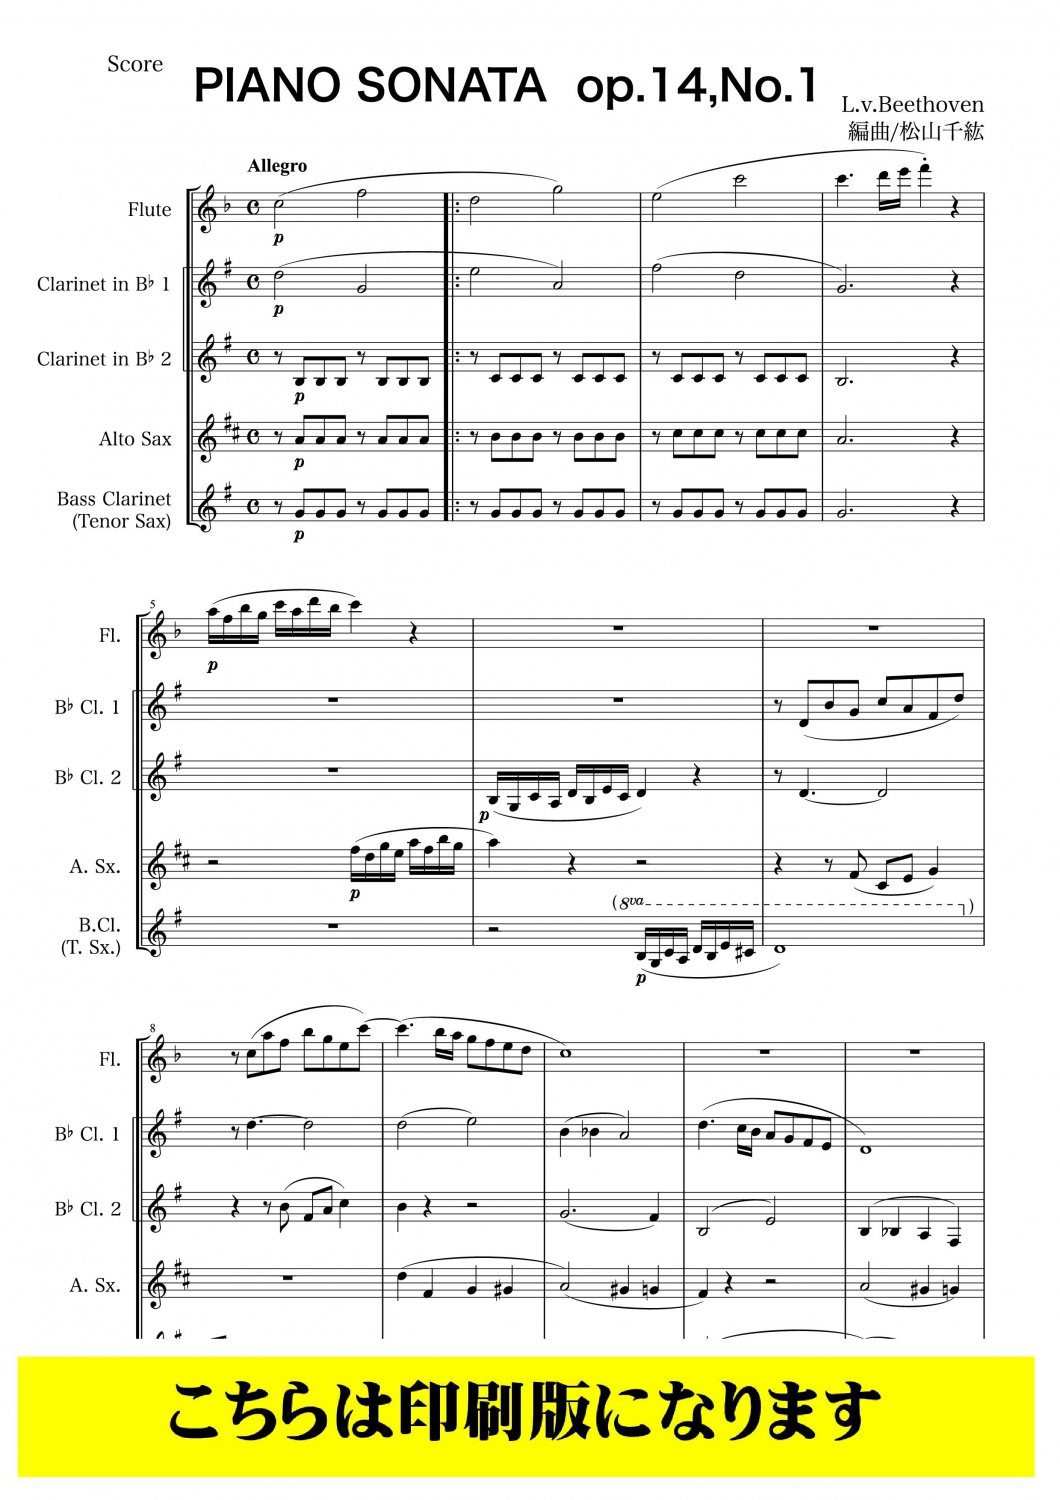 税込】 ベートーヴェン ピアノソナタ 1,2,3巻セット アート・デザイン 